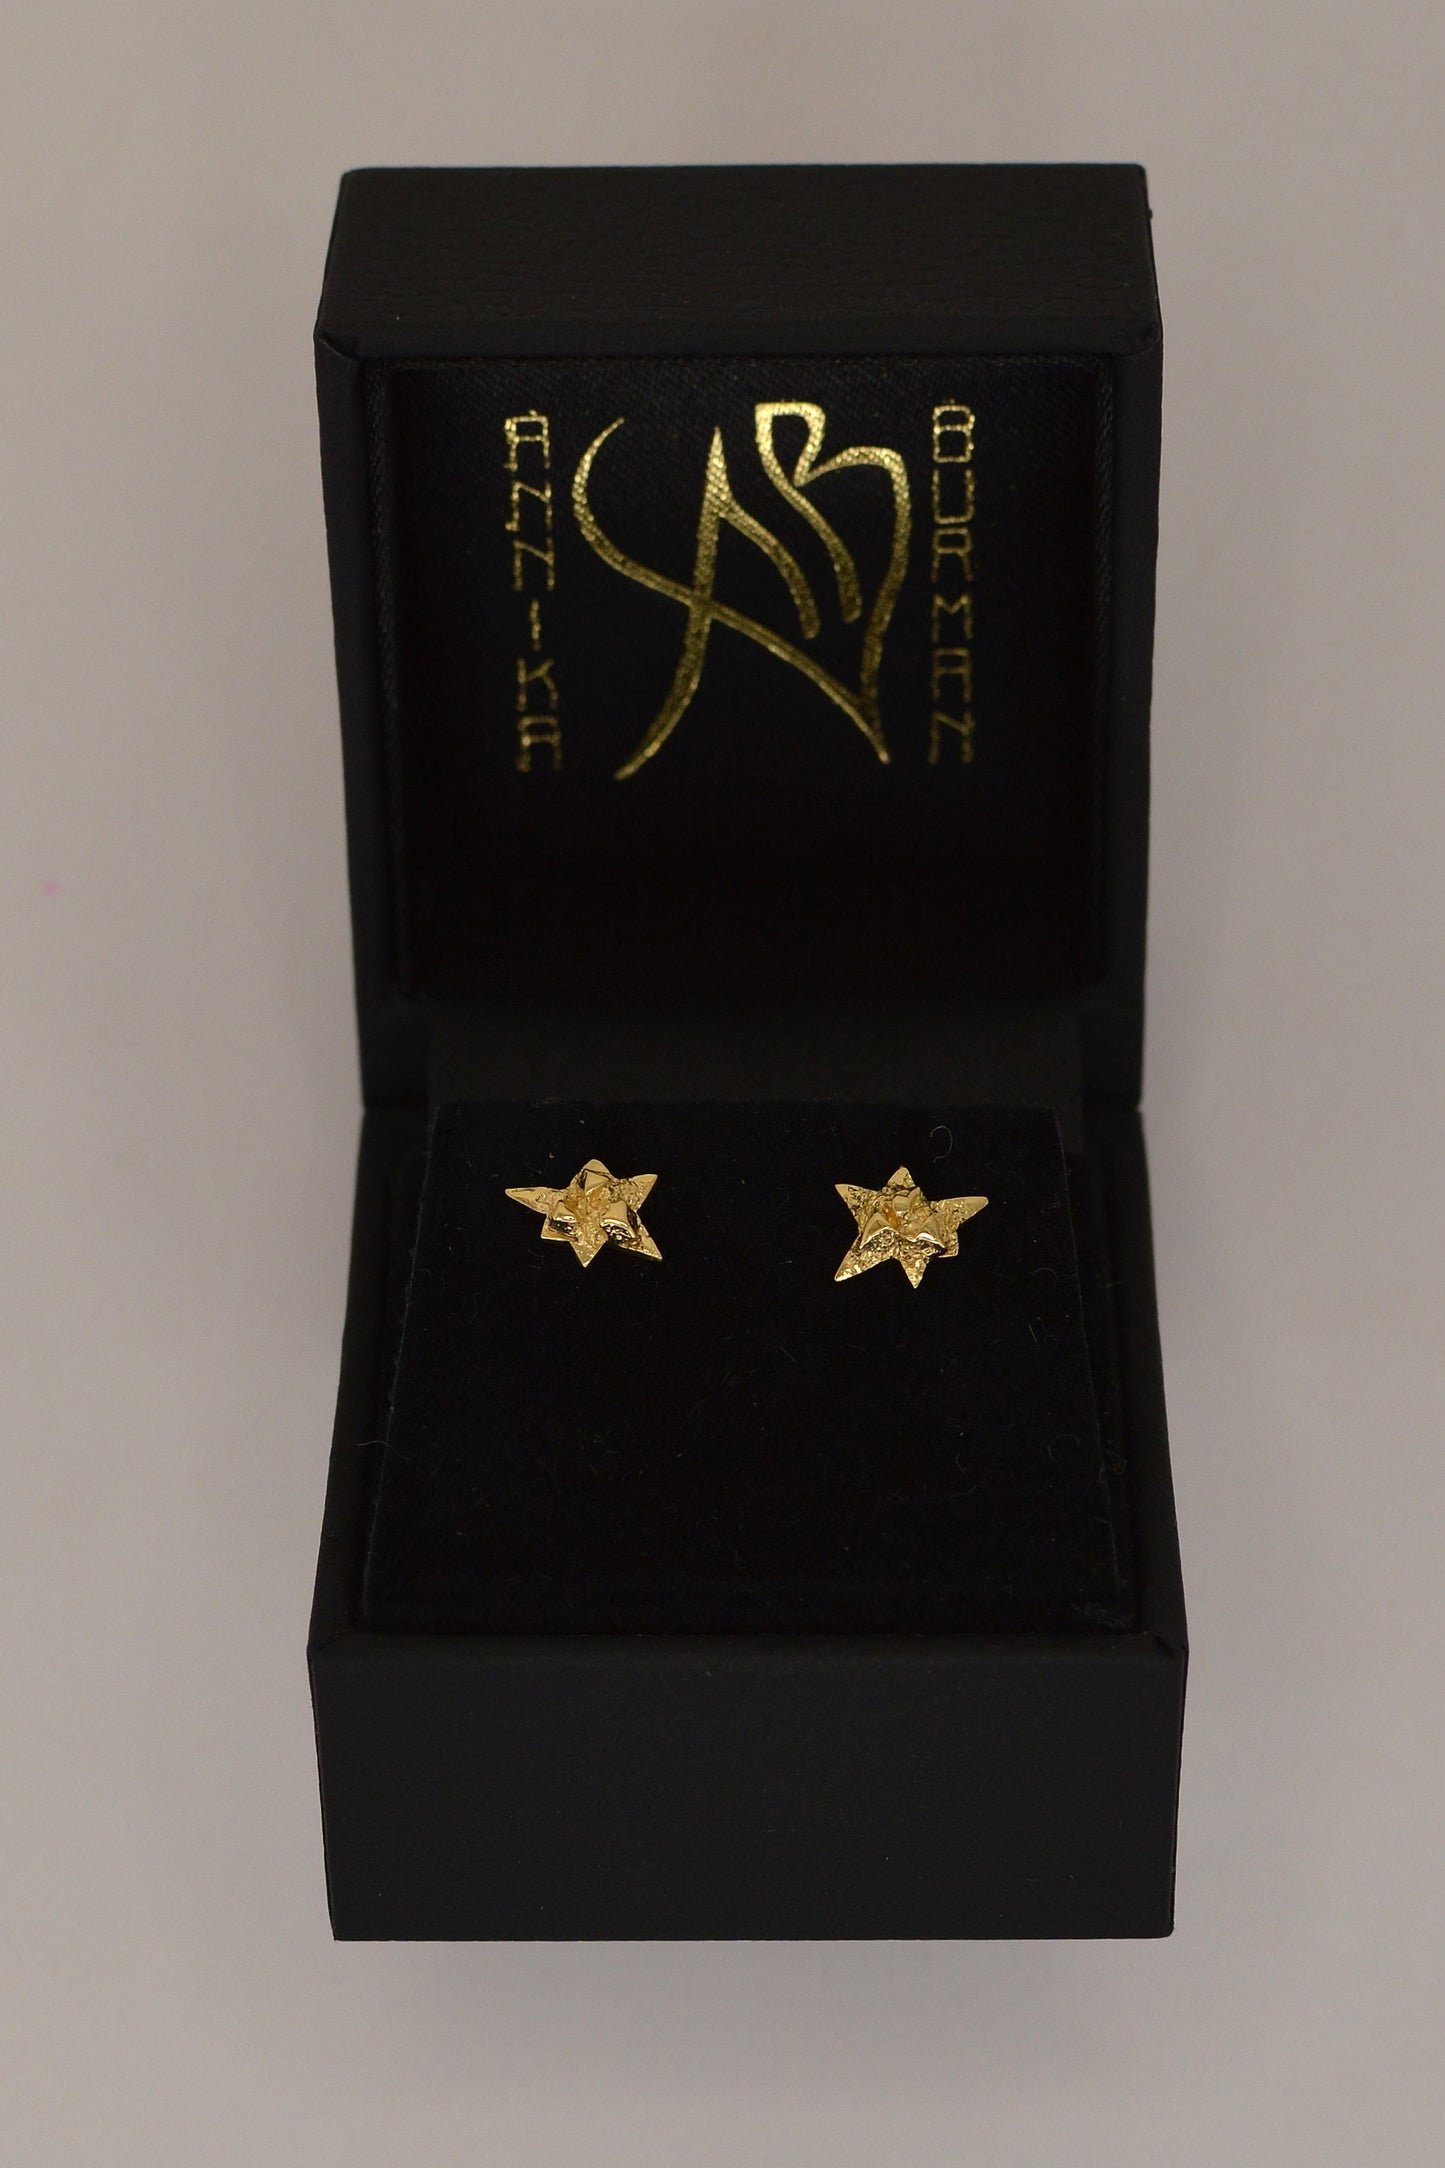 Nova gold earrings by Annika Burman in branded packaging